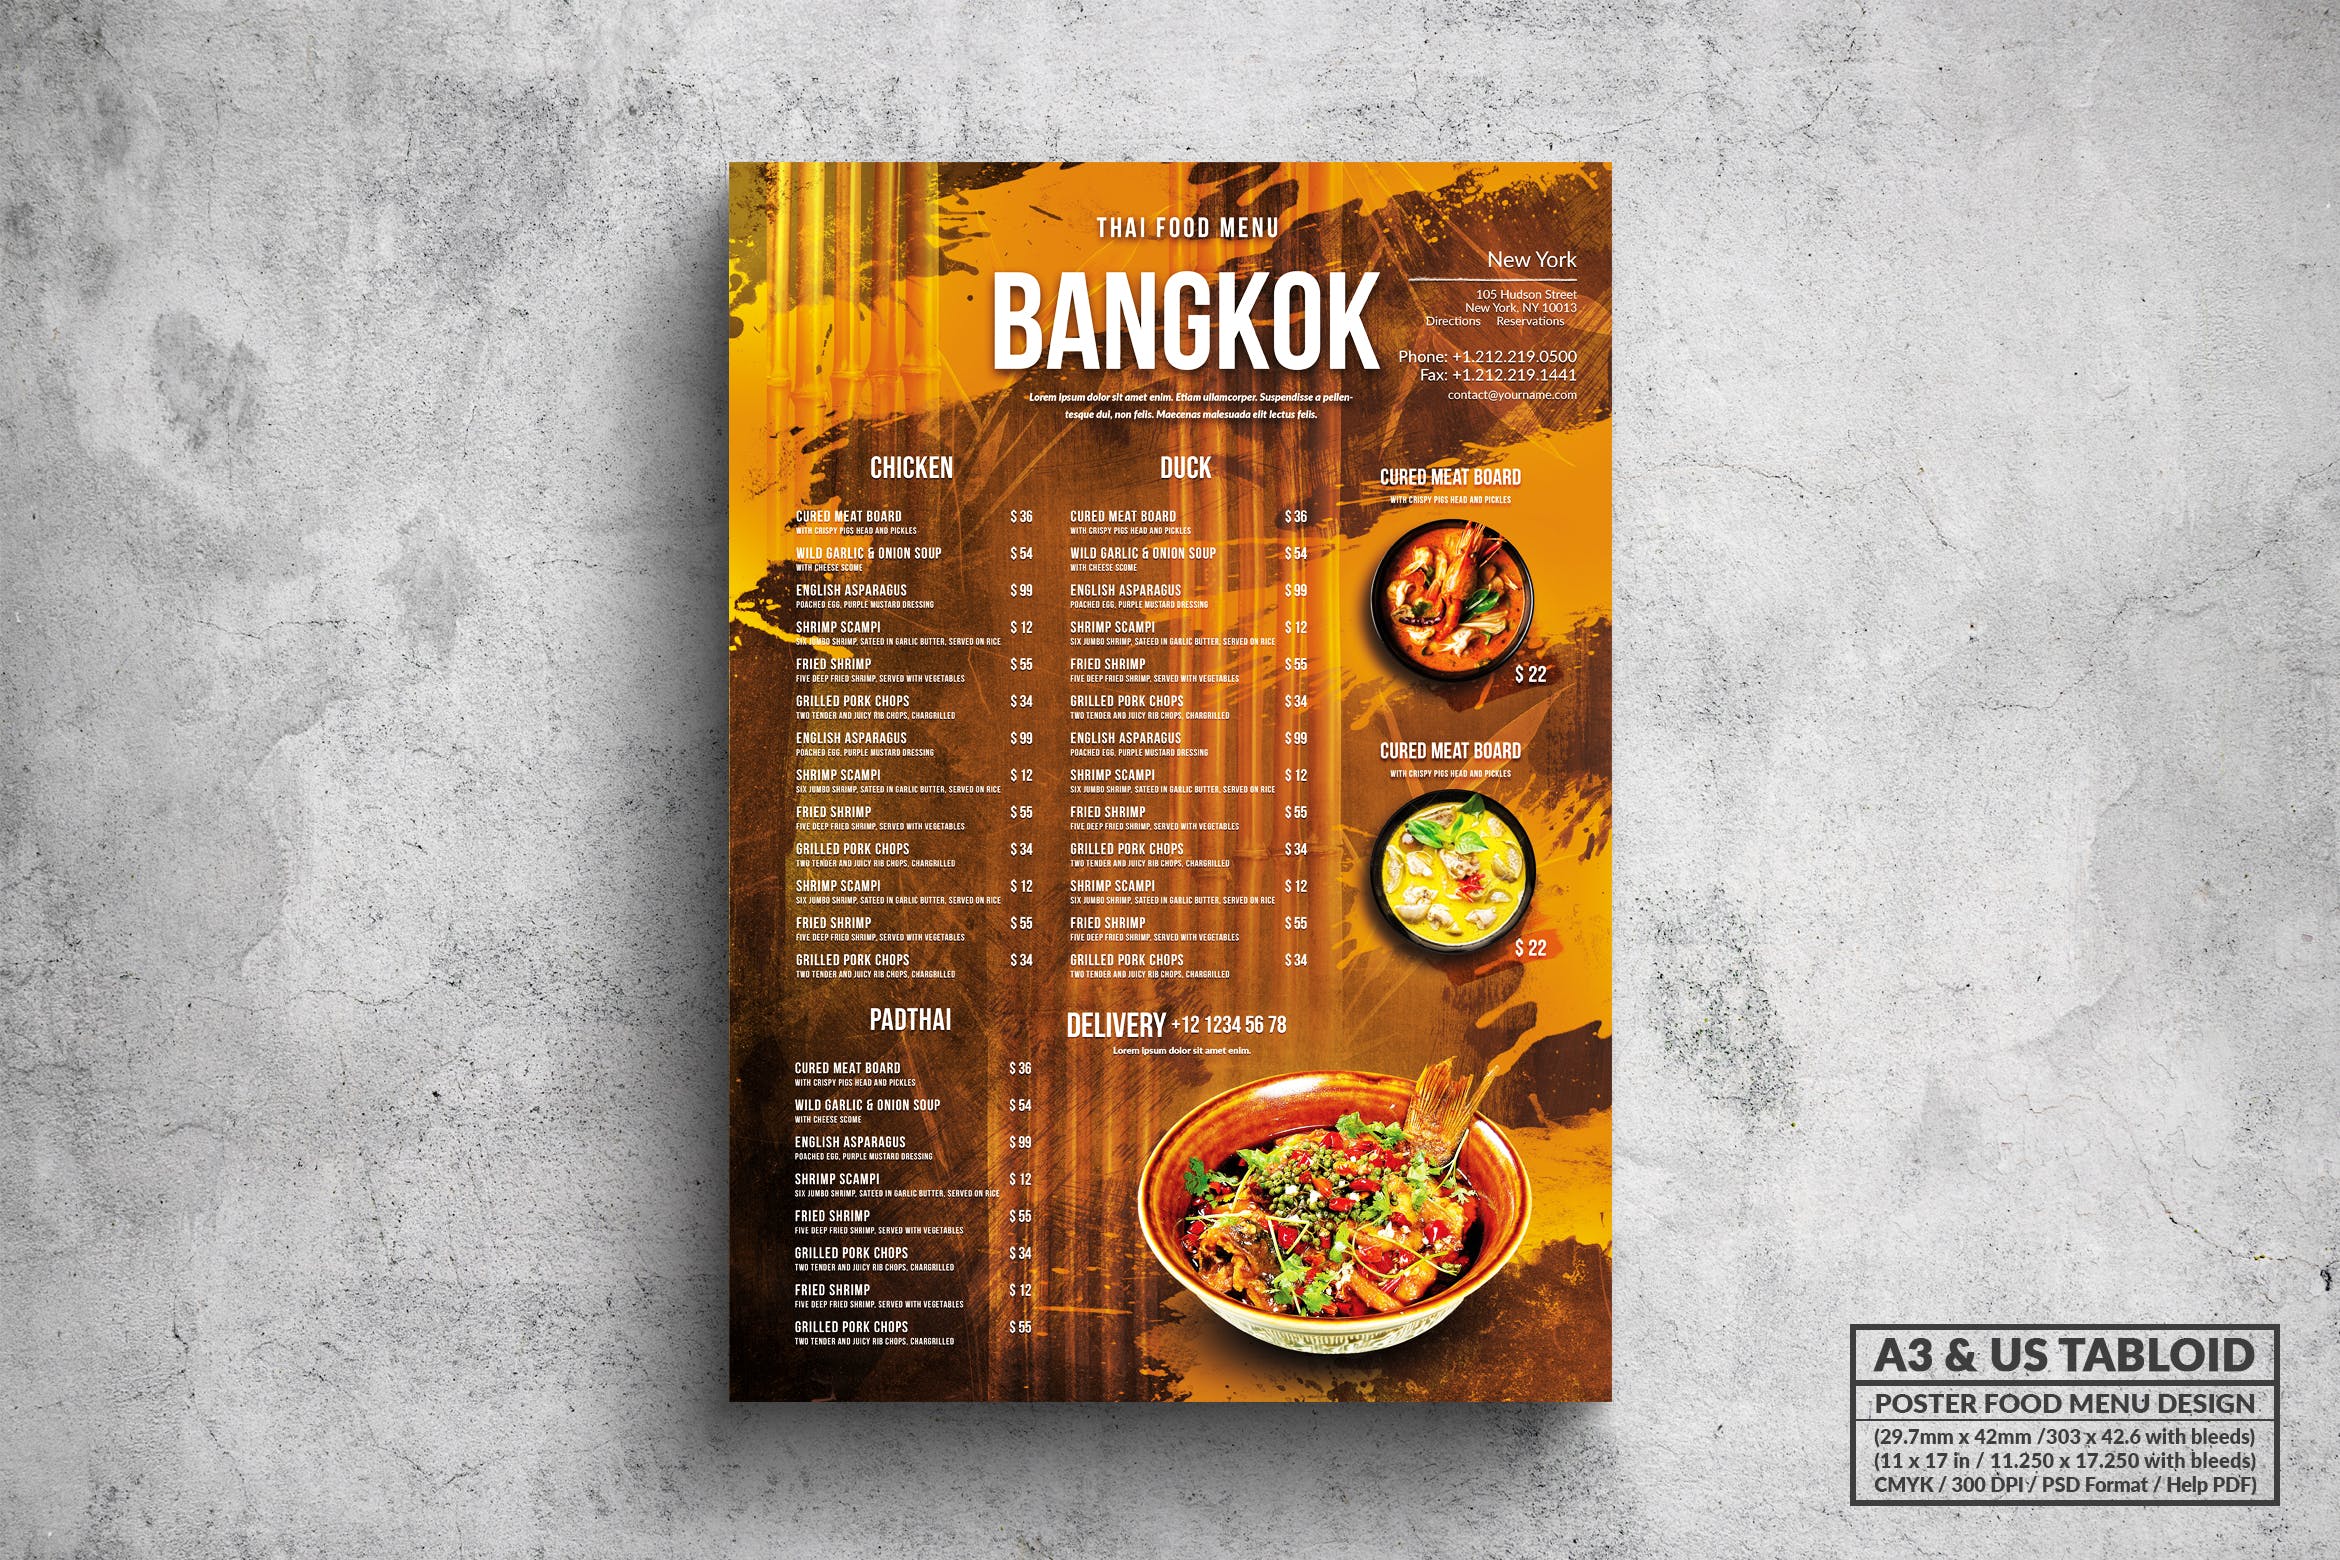 泰国菜餐厅菜单海报PSD素材蚂蚁素材精选模板 Bangkok Thai Food Menu – A3 & US Tabloid Poster插图